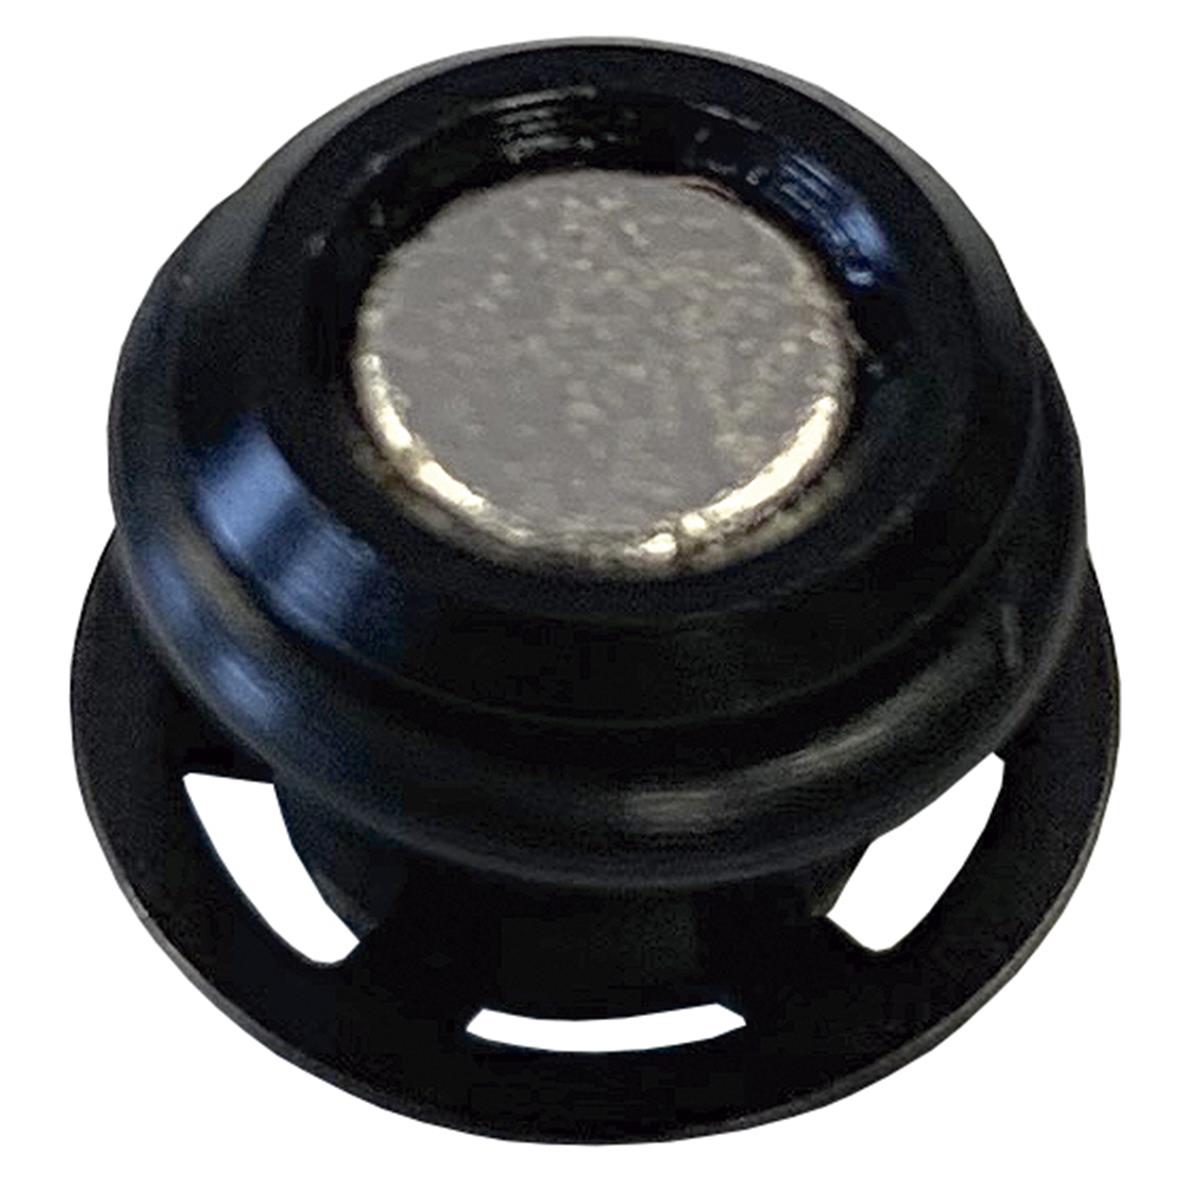 Galfer Magnetic Sensor E-Bike Black, for SHARK brake discs